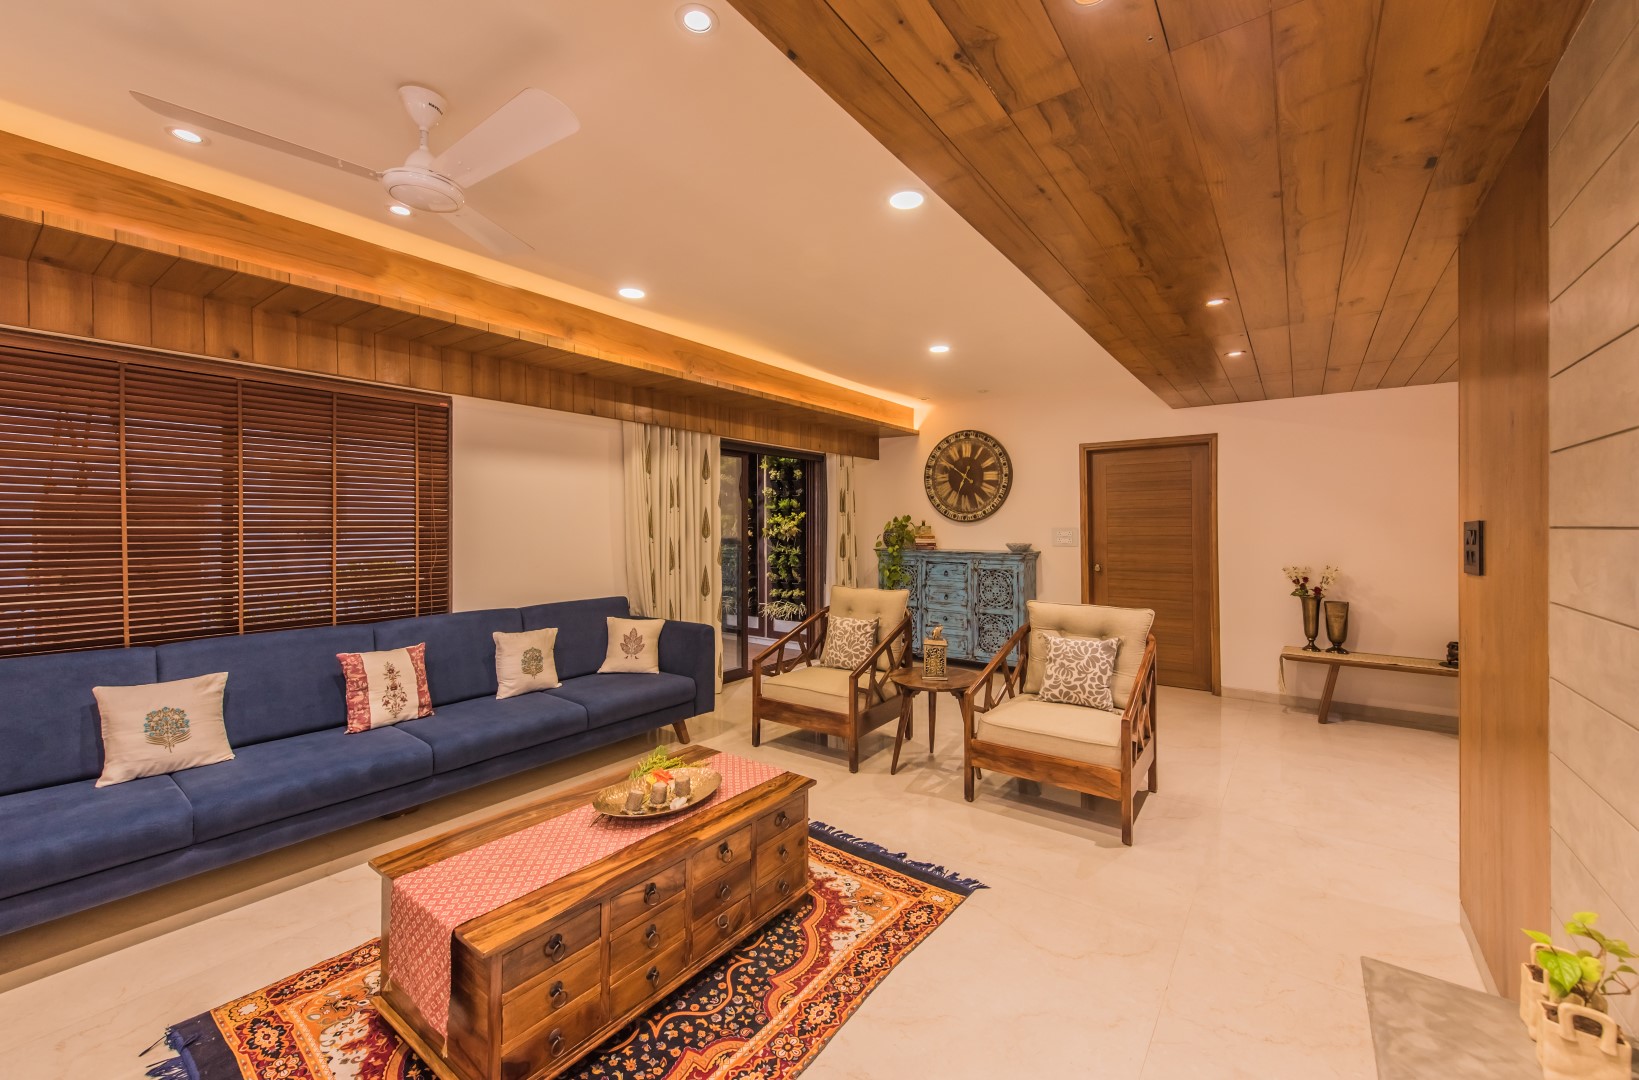 Contemporary Indian Style Apartment Interiors   MS Design Studio ...